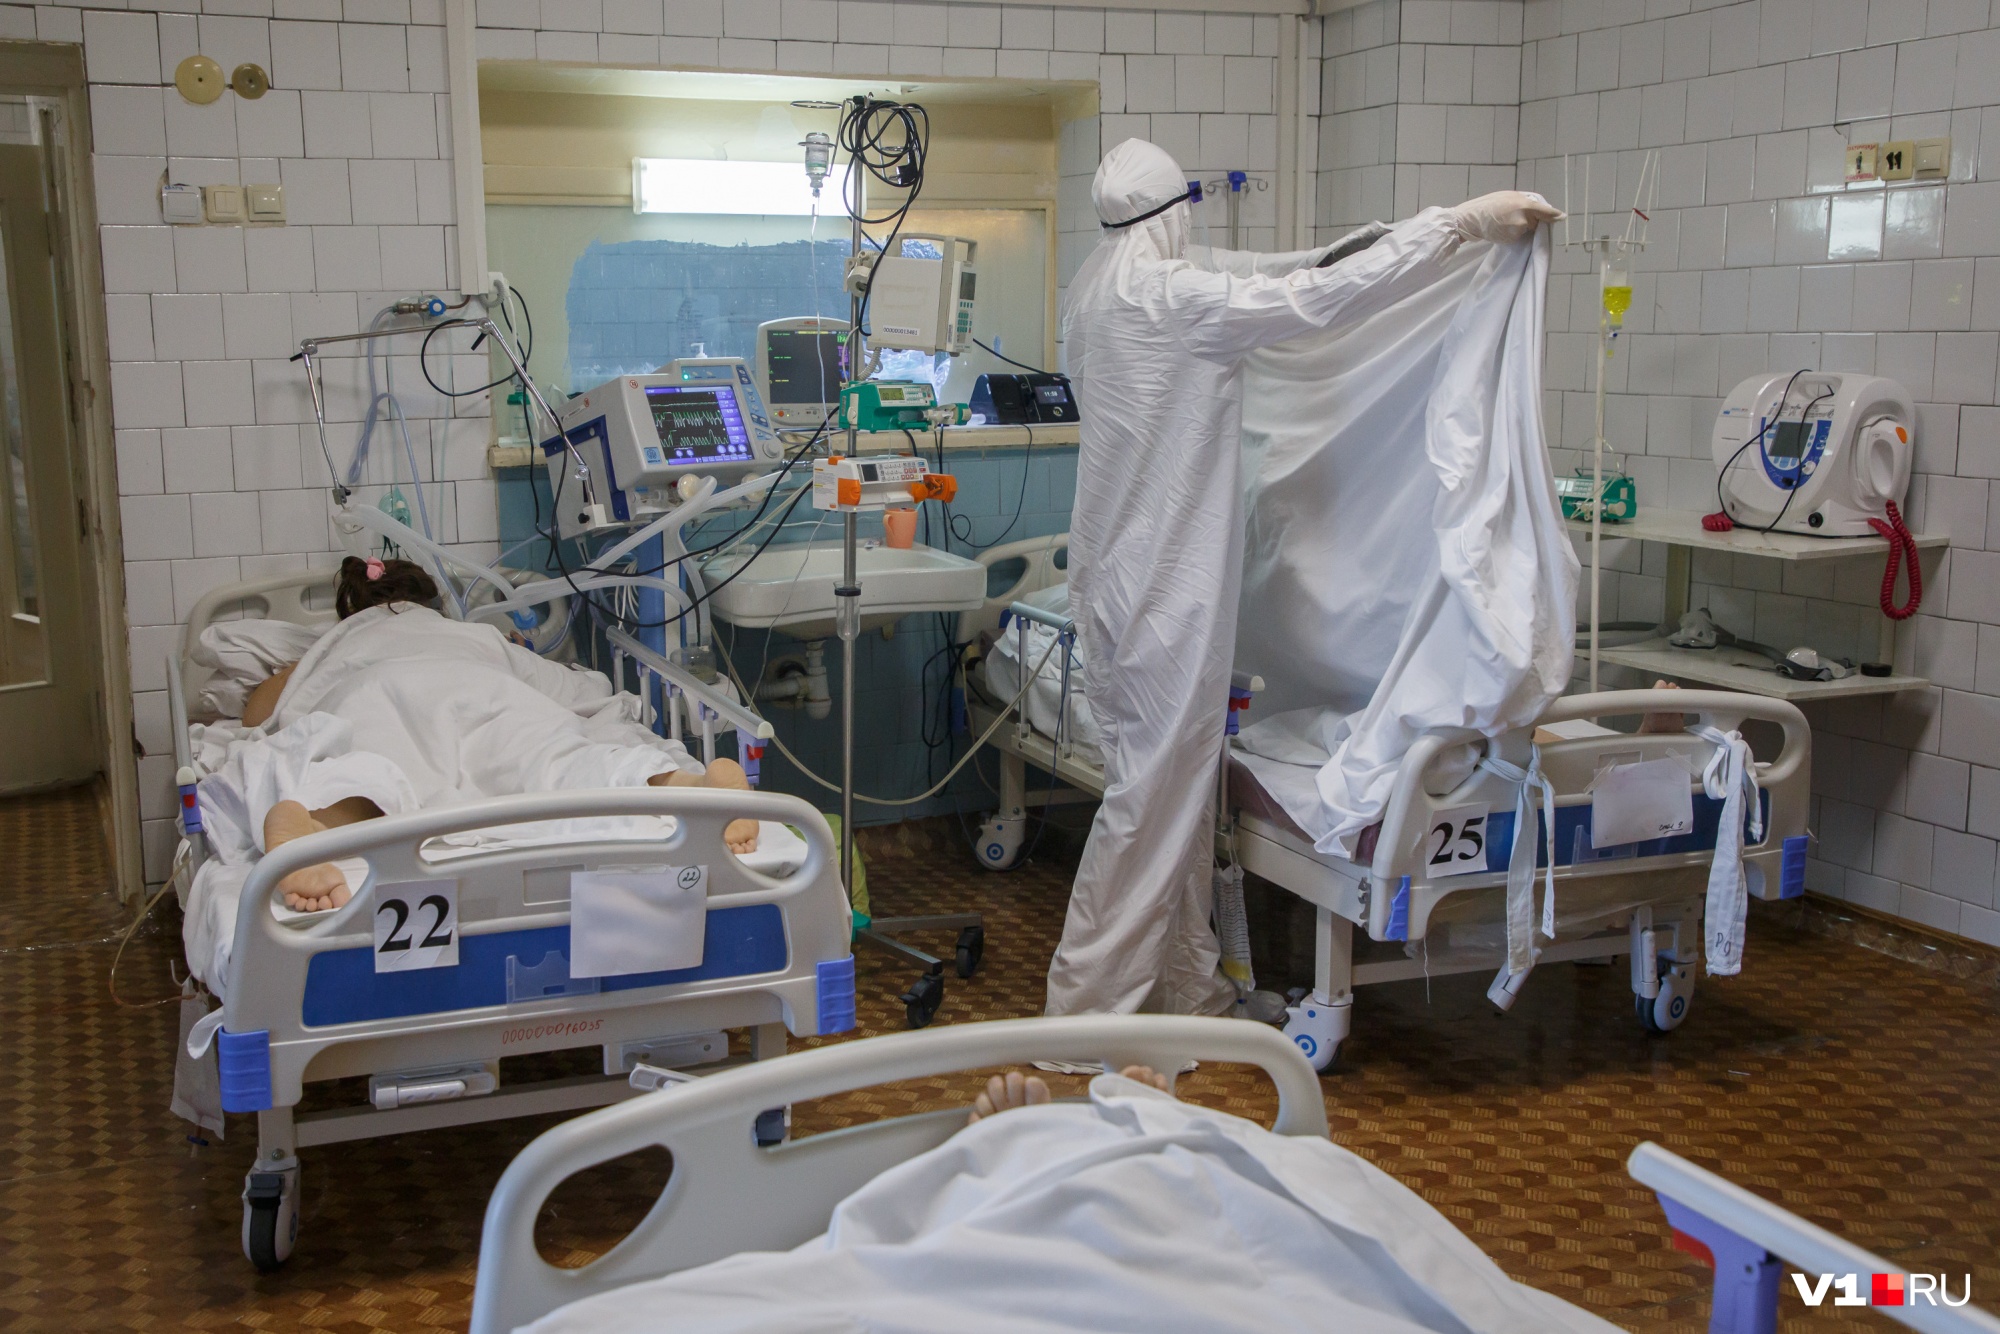 Незначительный спад: в Кузбассе за сутки у 133 человек выявили коронавирус